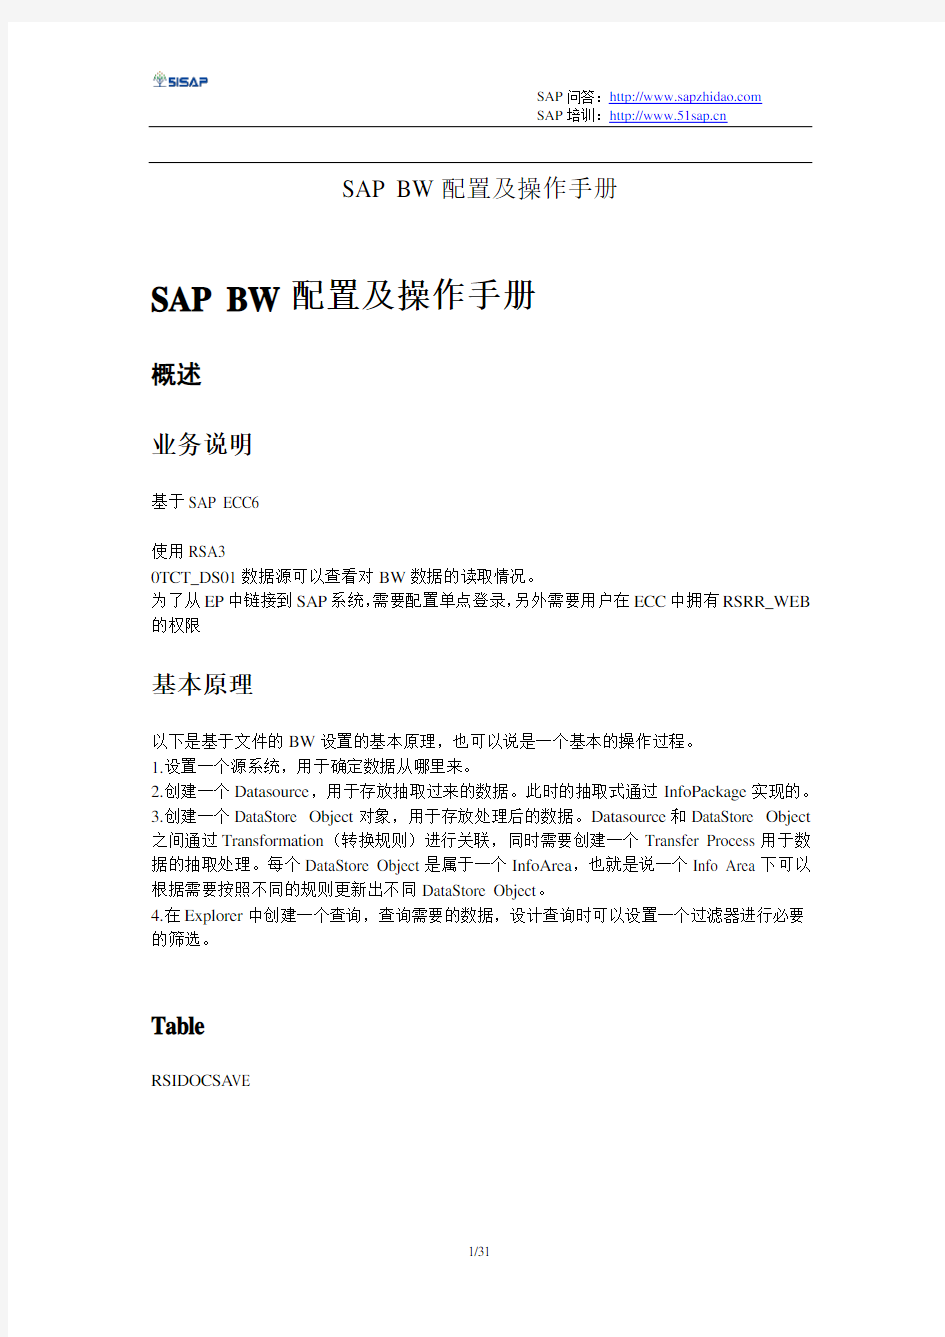 SAP_BW配置及操作手册(BW中文图文教程)_【51SAP教育中心】